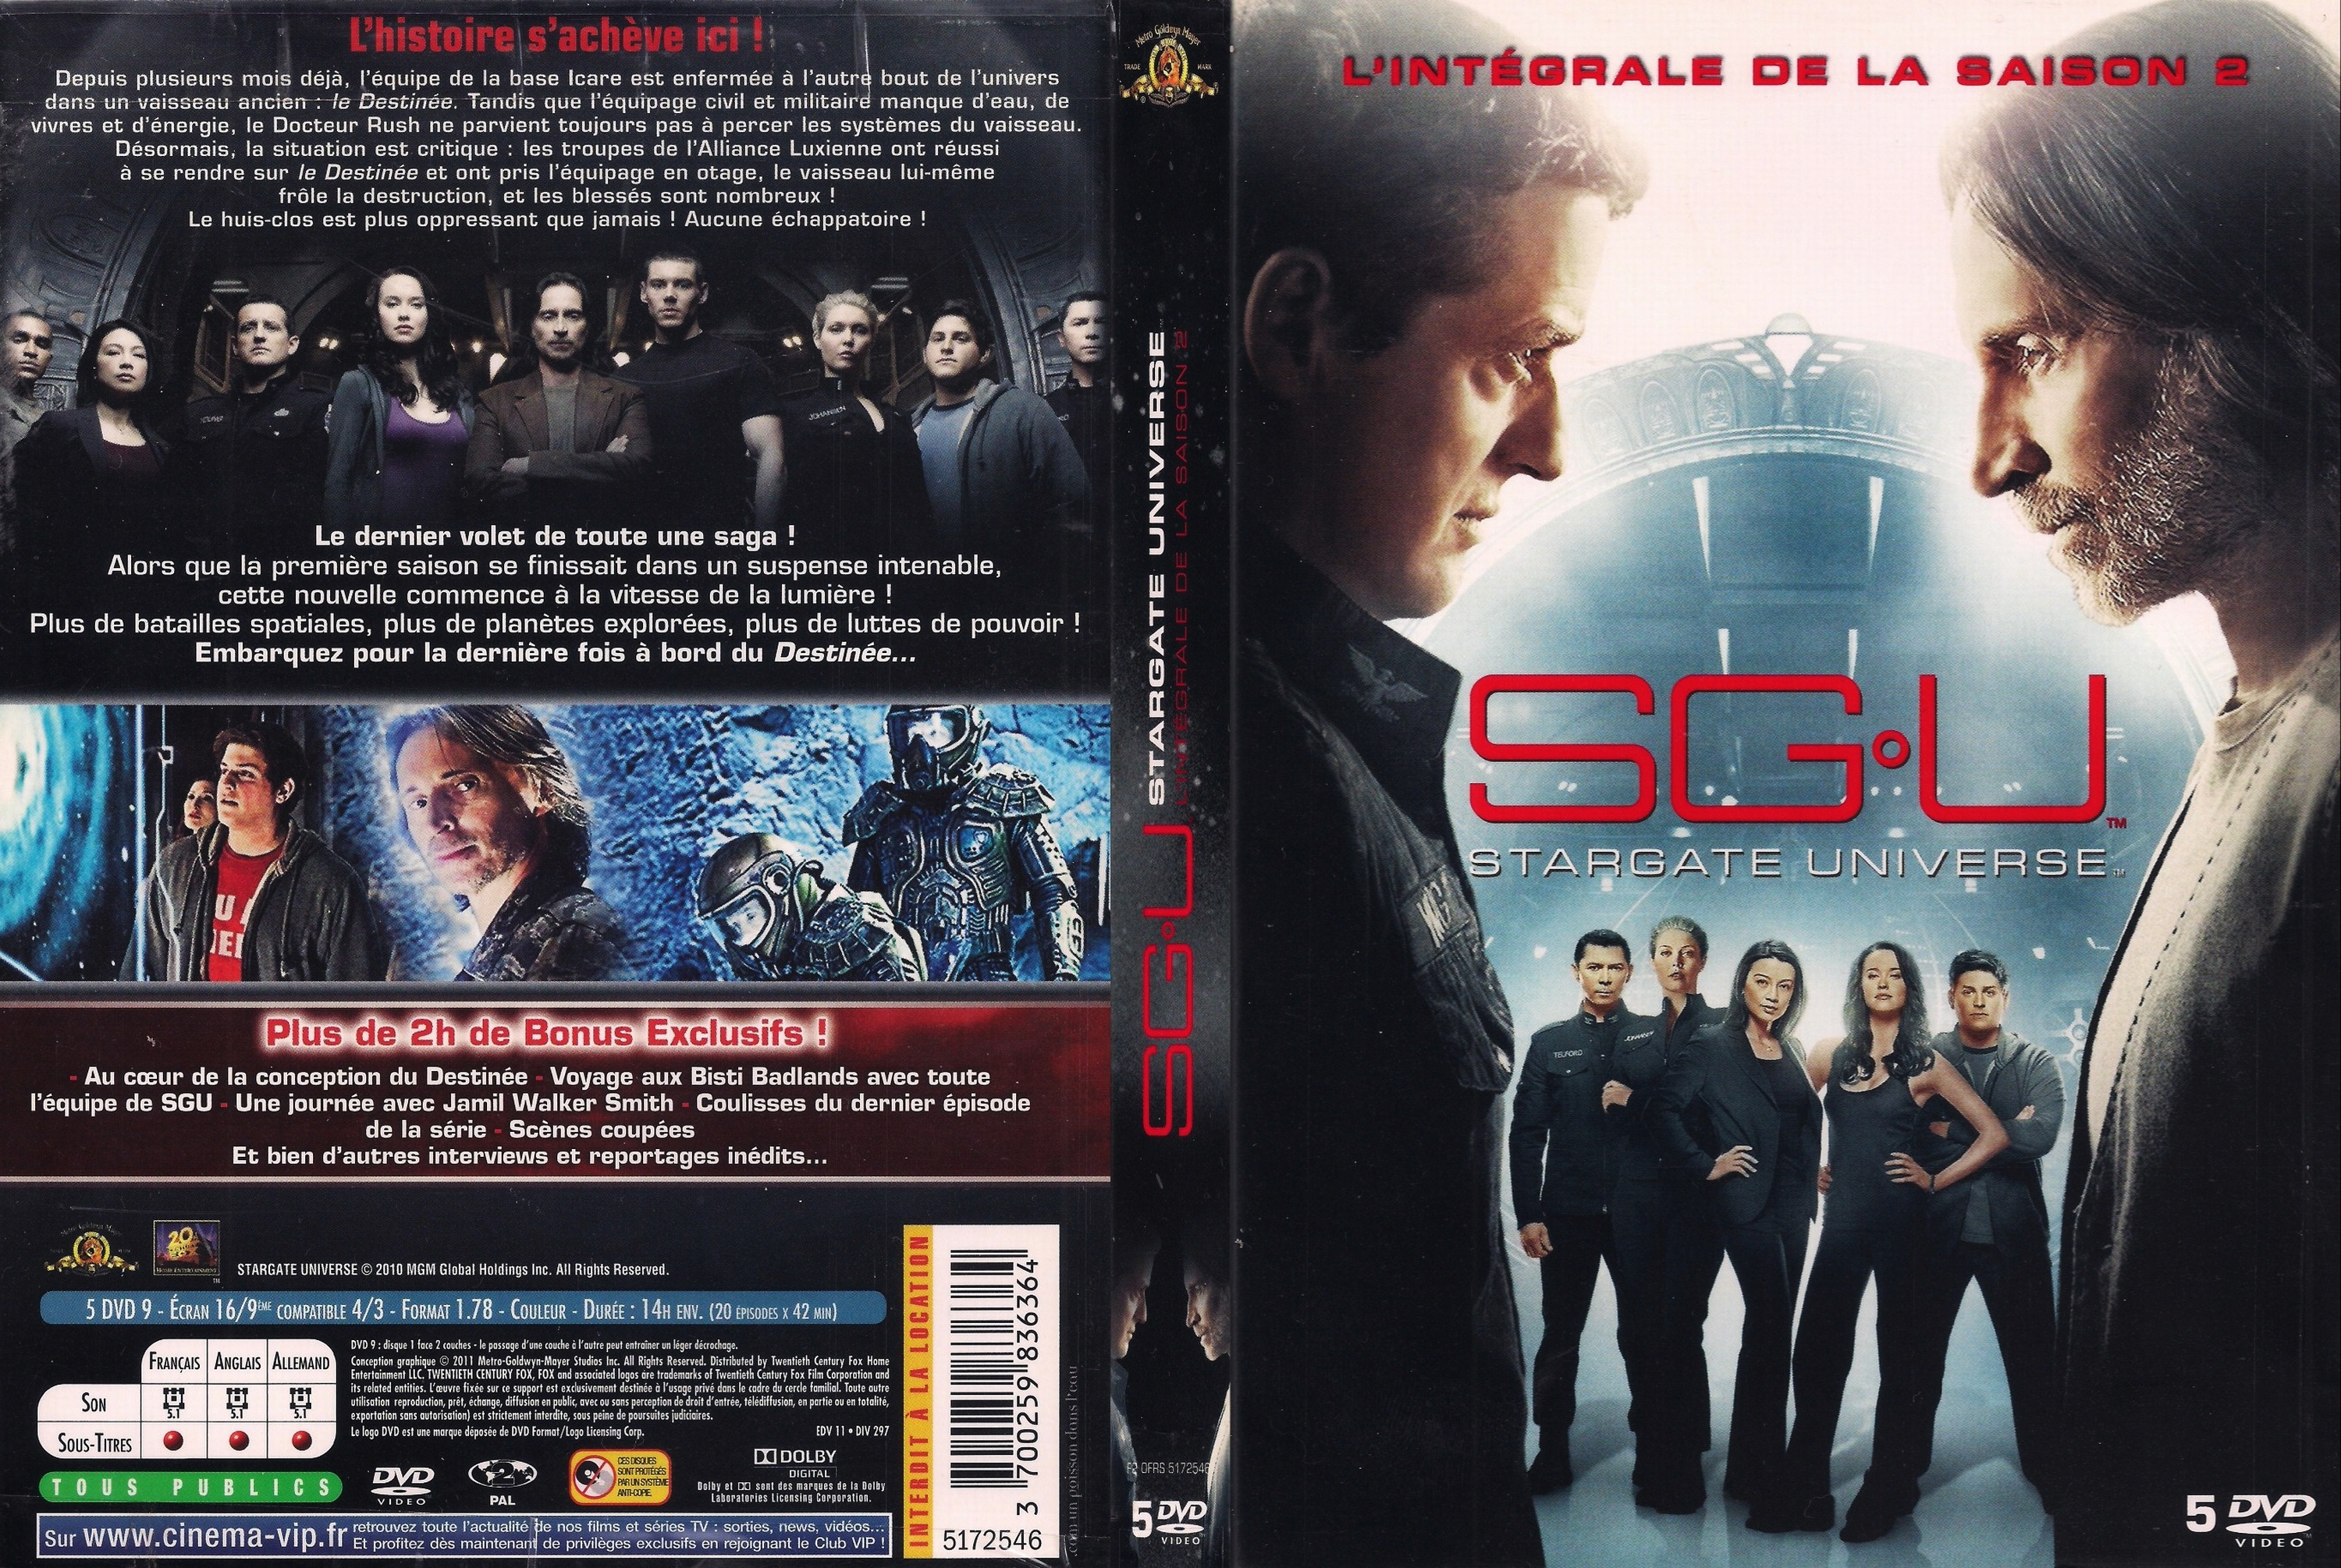 Jaquette DVD Stargate Universe saison 2 COFFRET